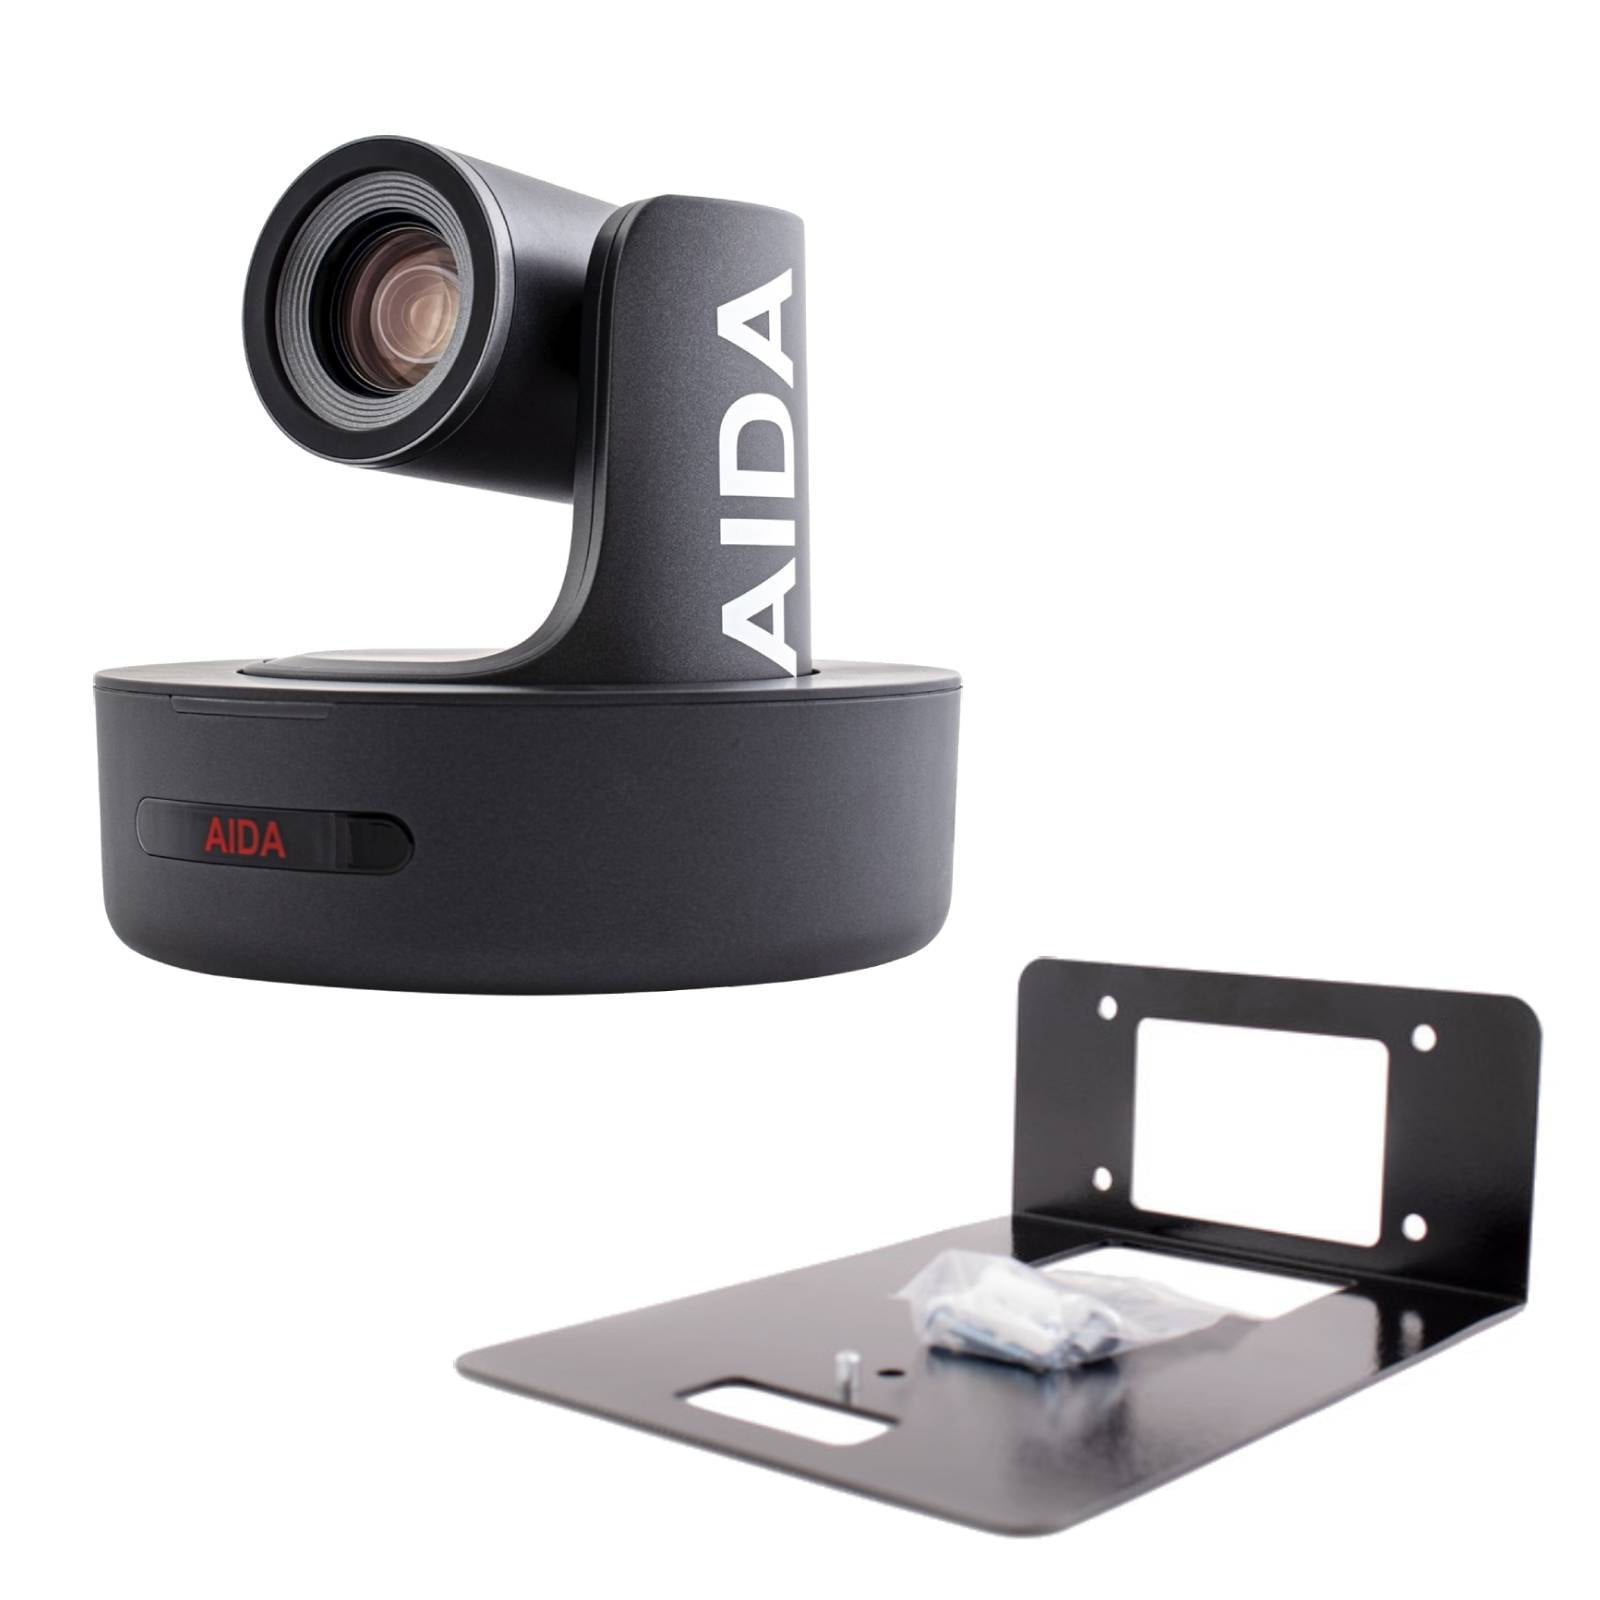 Aida web cam